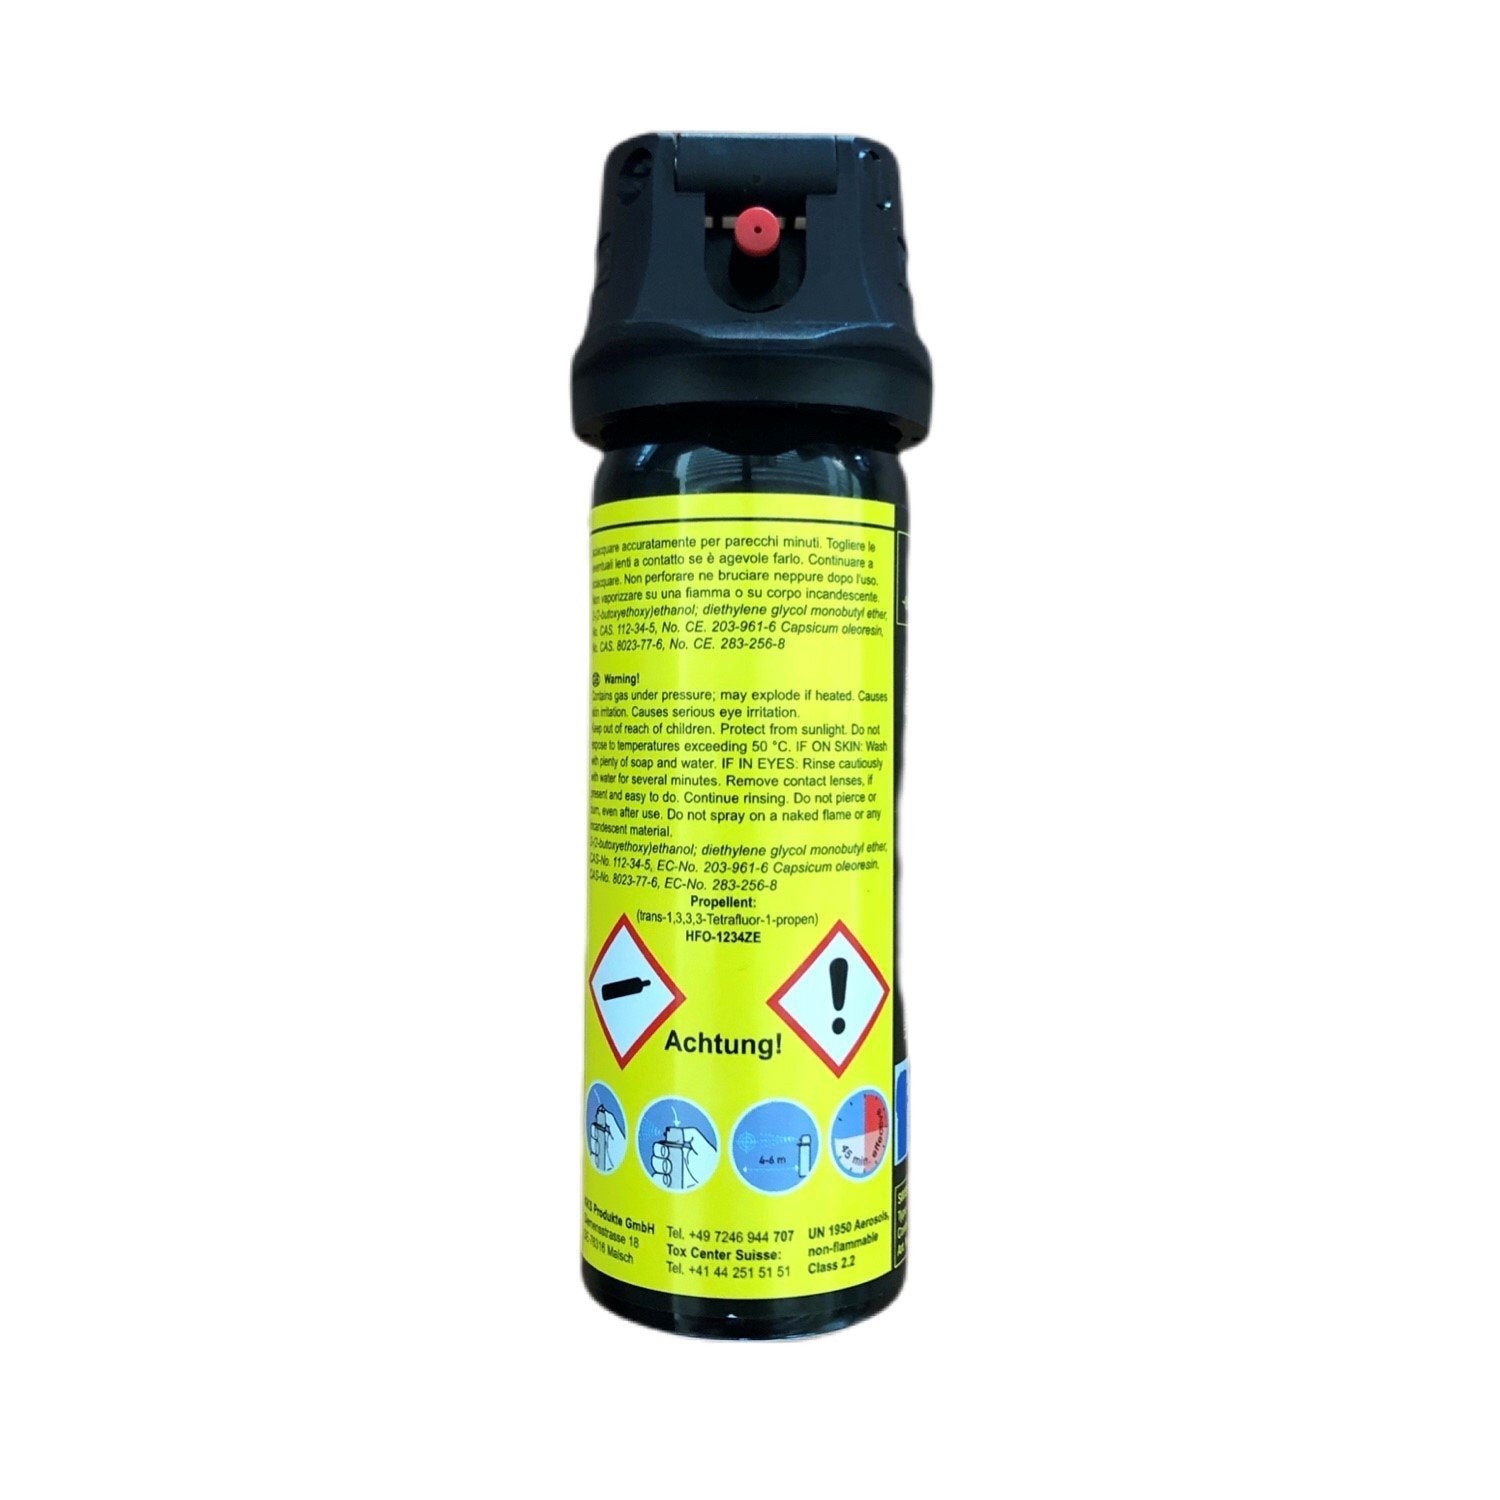 Pfefferspray - Sicherheit mit dem richtigen Spray - StrawPoll